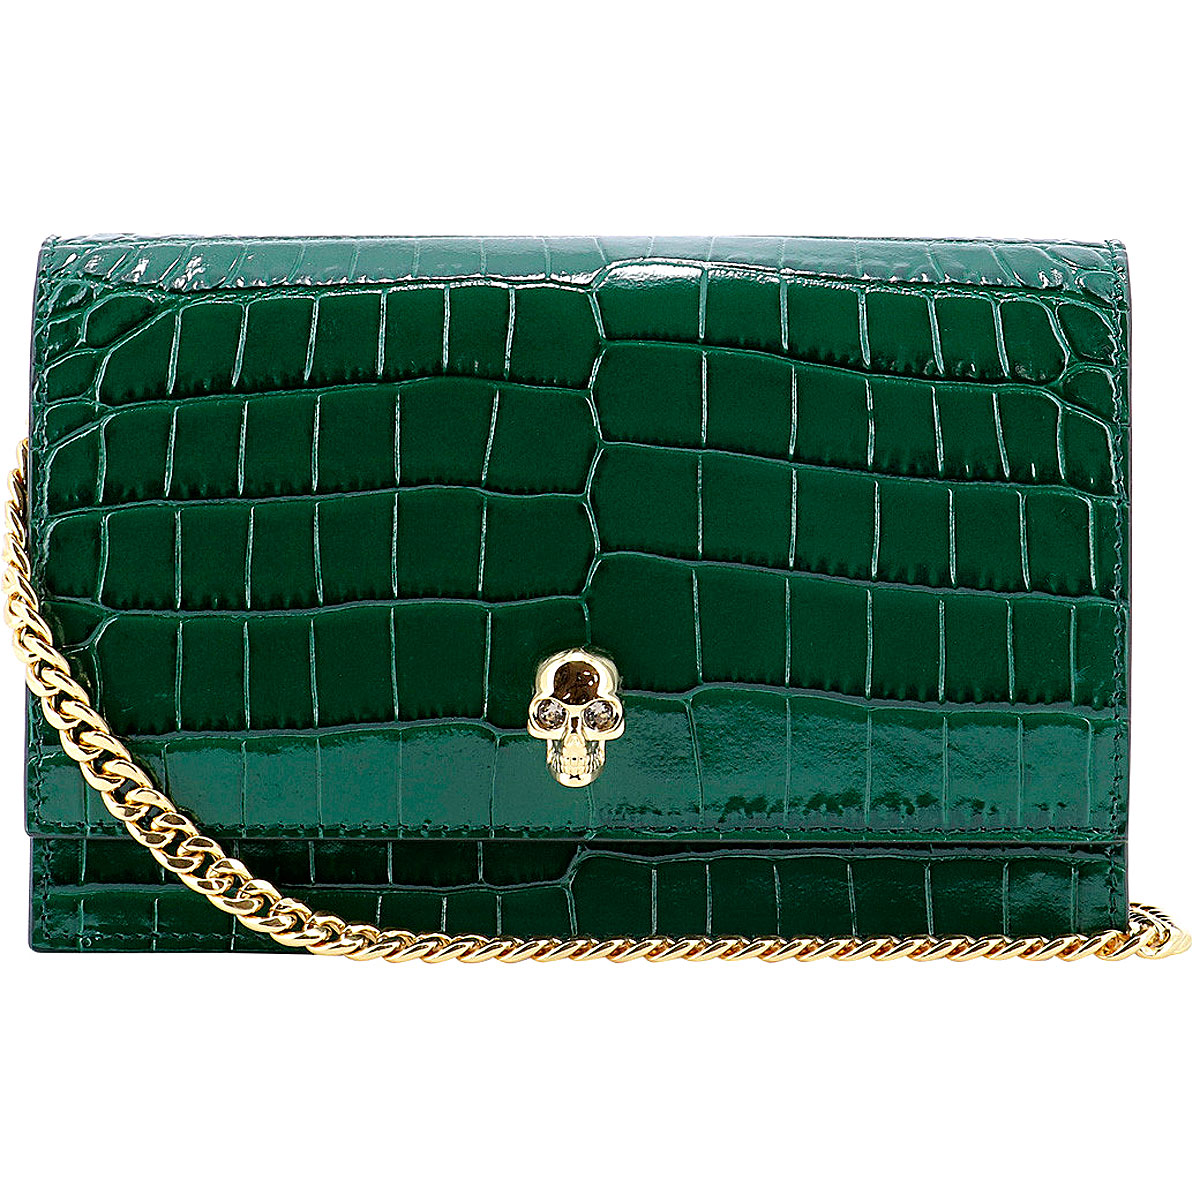 Handbags Alexander McQueen, Style code: 613088-1hb0g-3120